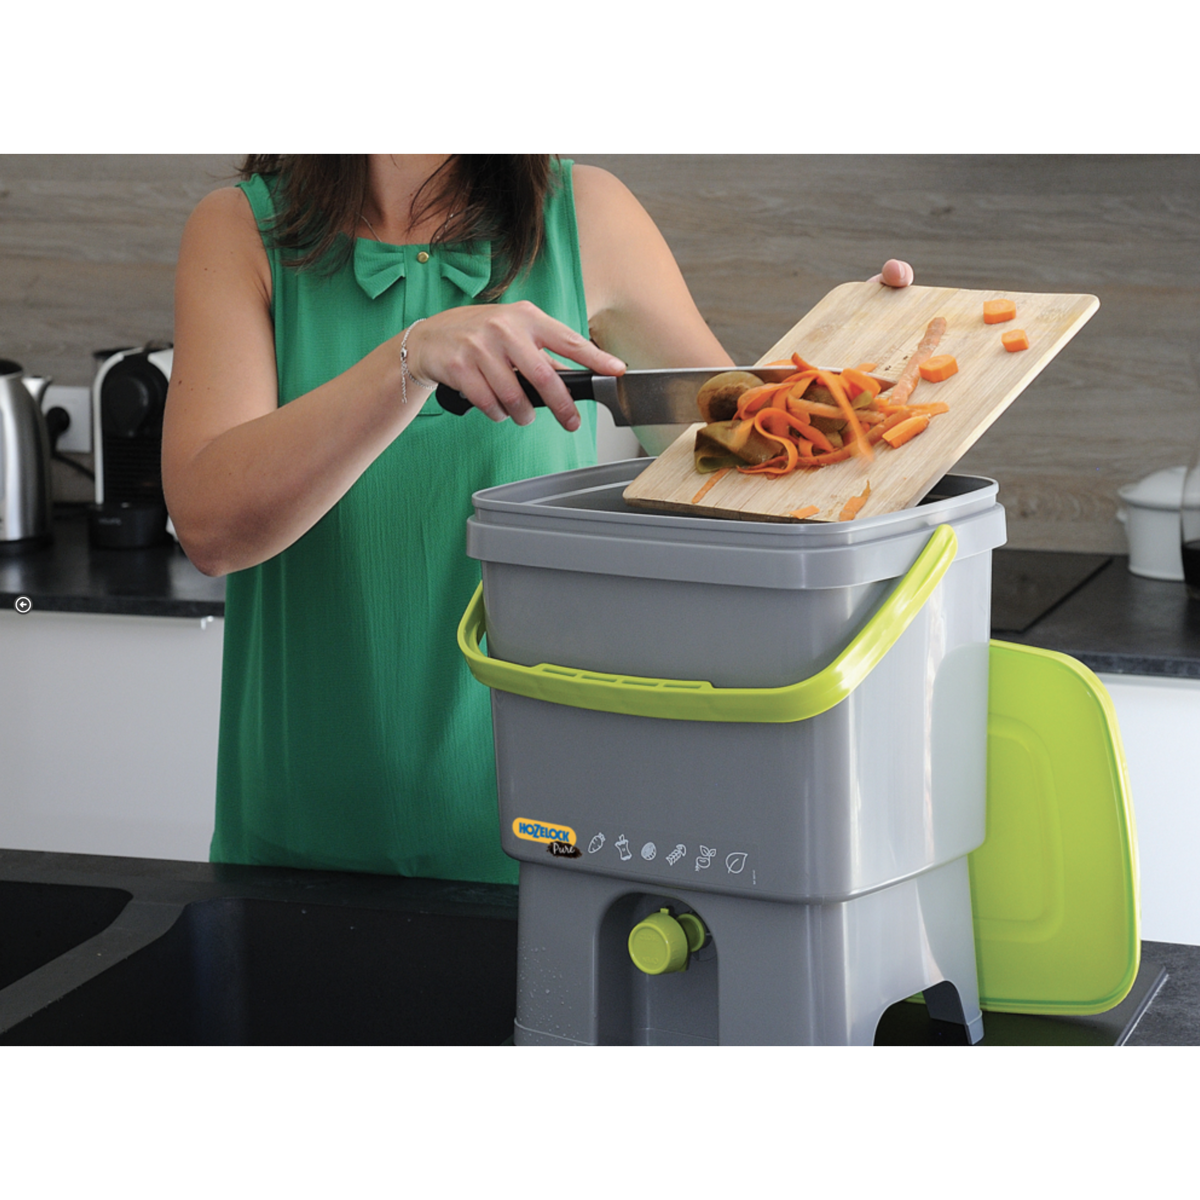 Greenzy : une start-up invente un composteur de cuisine sans odeur